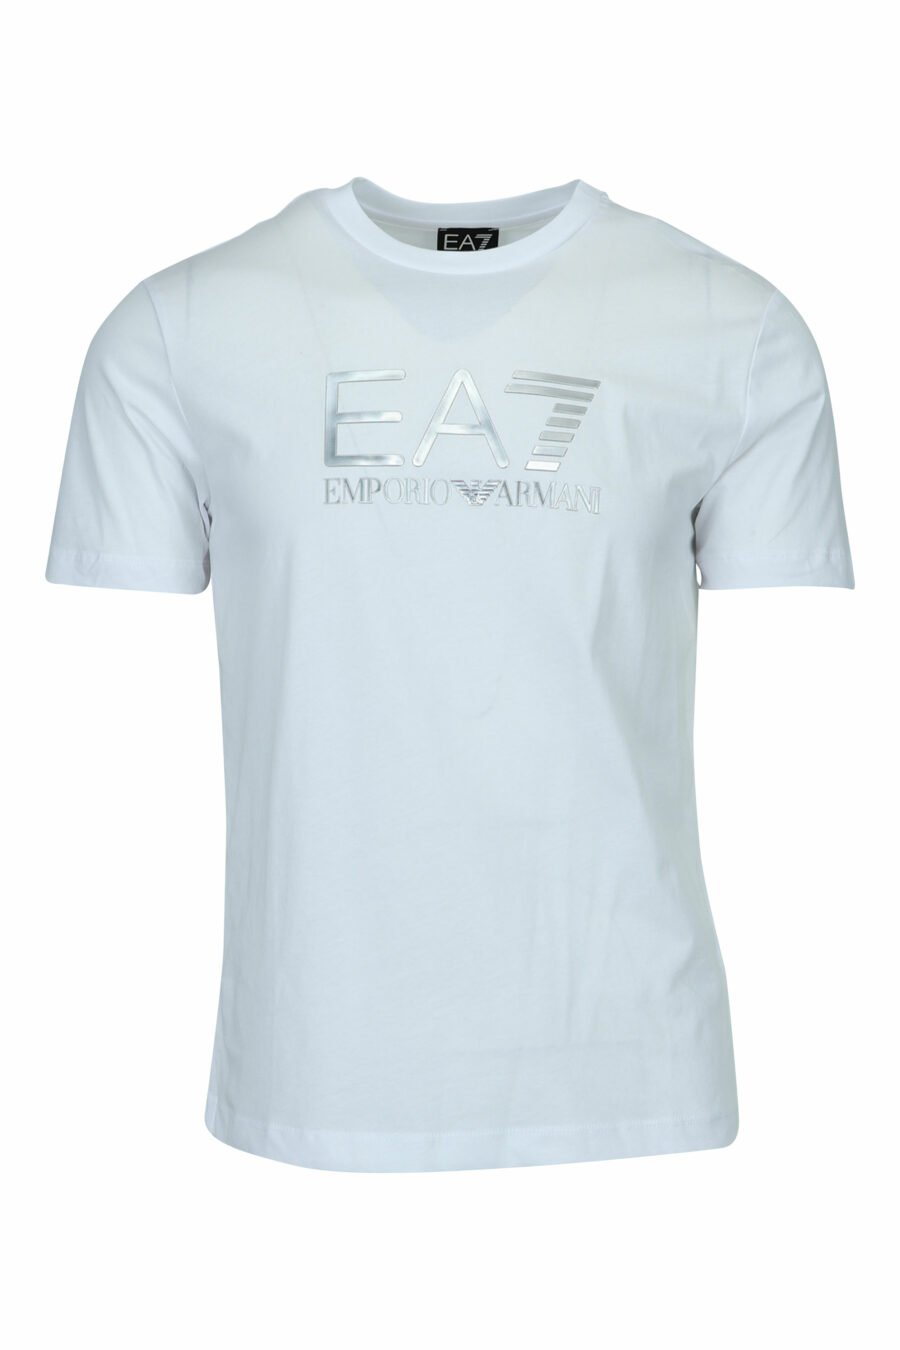 T-shirt blanc avec maxilogo "lux identity" en dégradé - 8057970673118